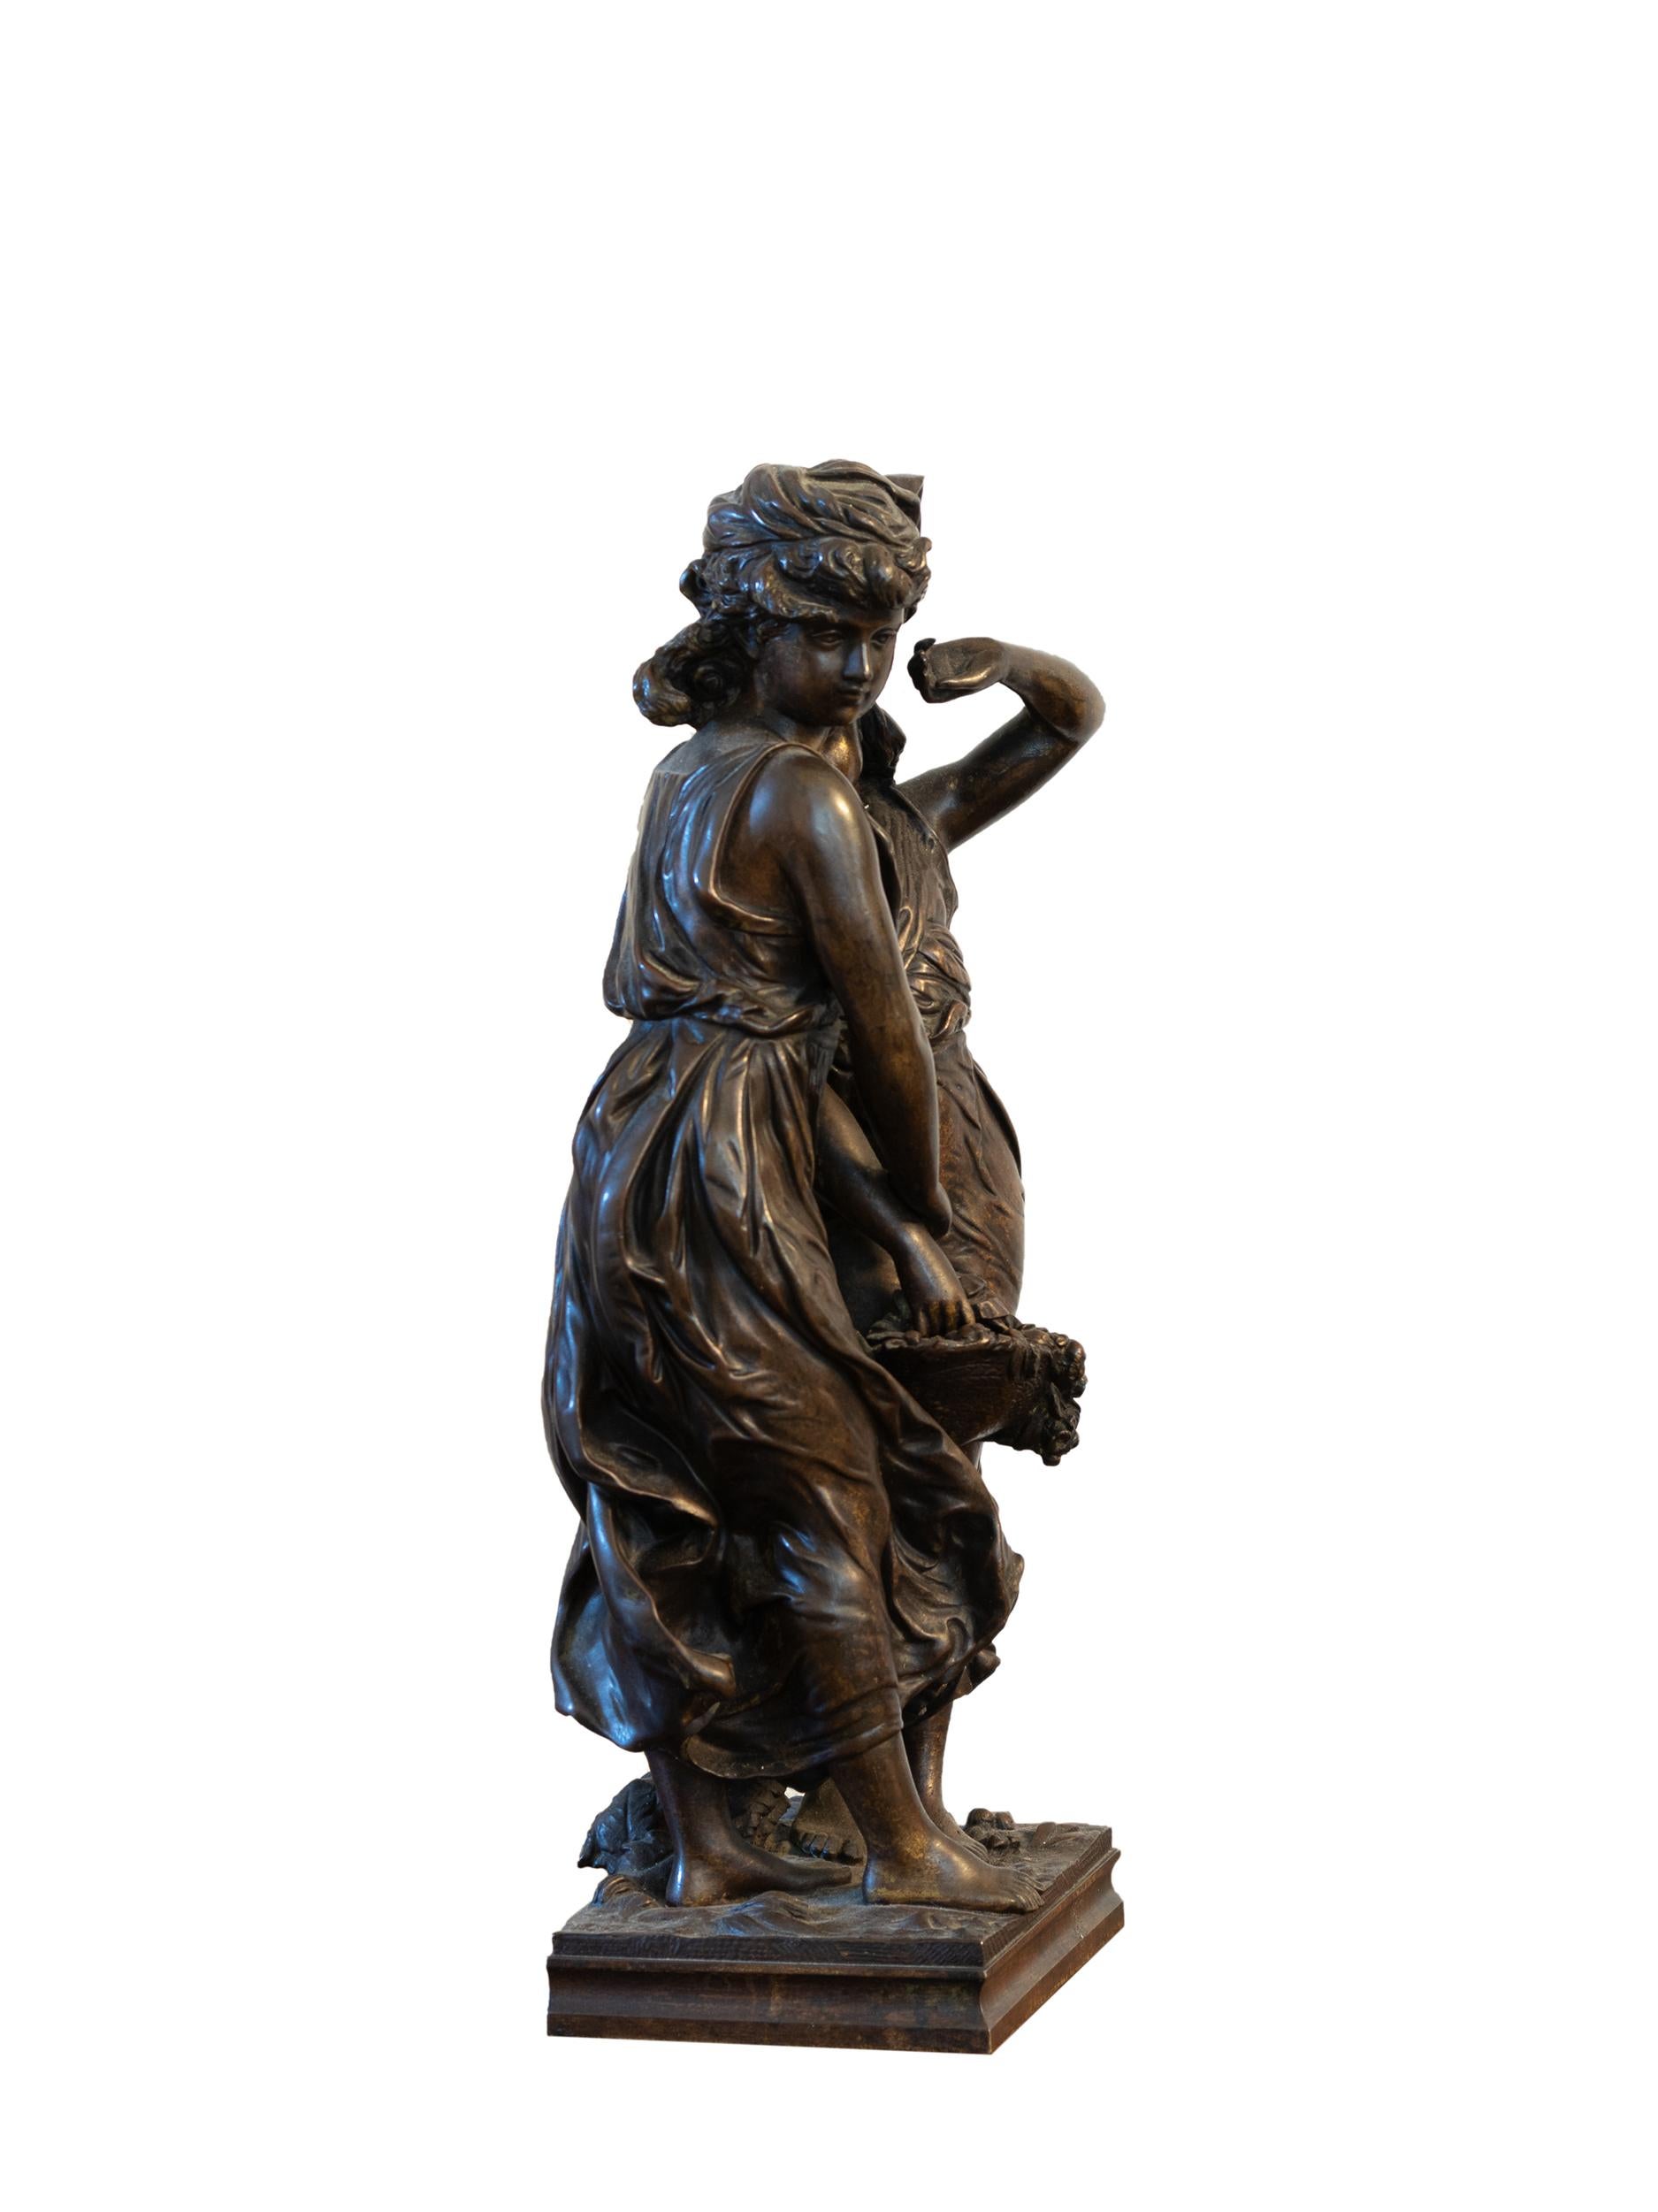 Eine Zinnstatue von Demeter und Persephone, die sich umarmen und deren Tuniken im Wind wehen. Unterschrift 